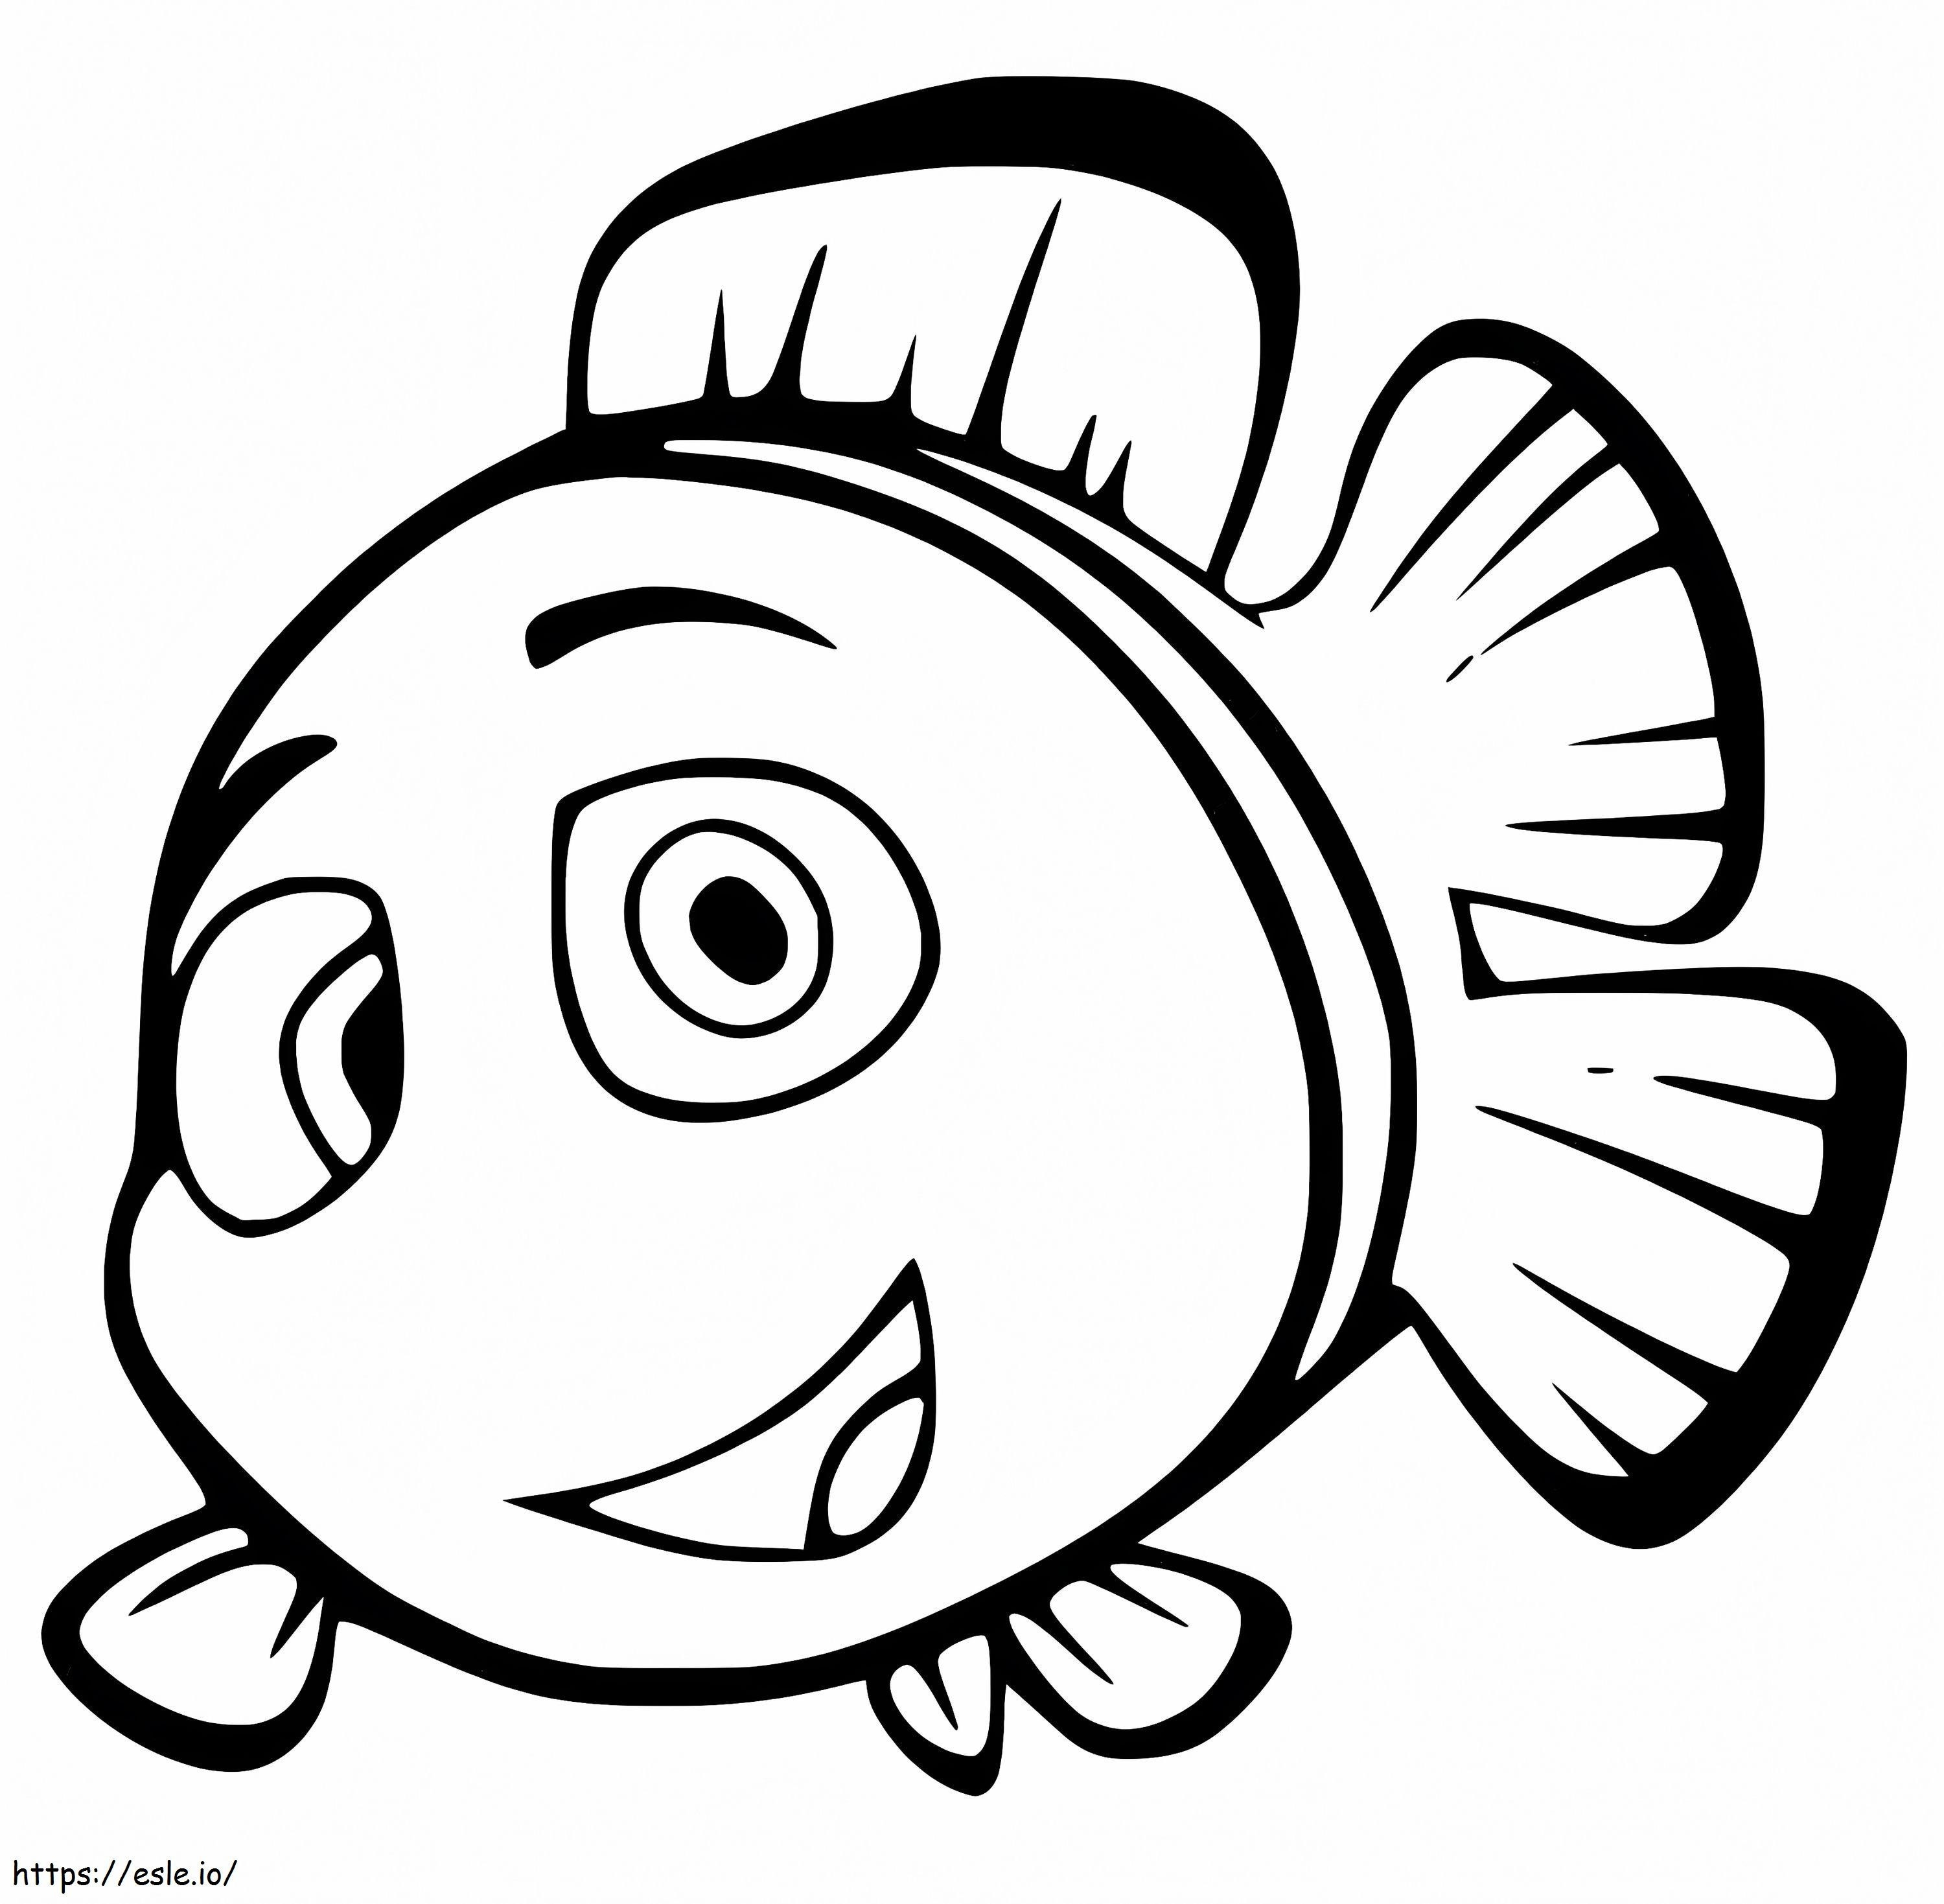 Pesce pagliaccio del fumetto da colorare